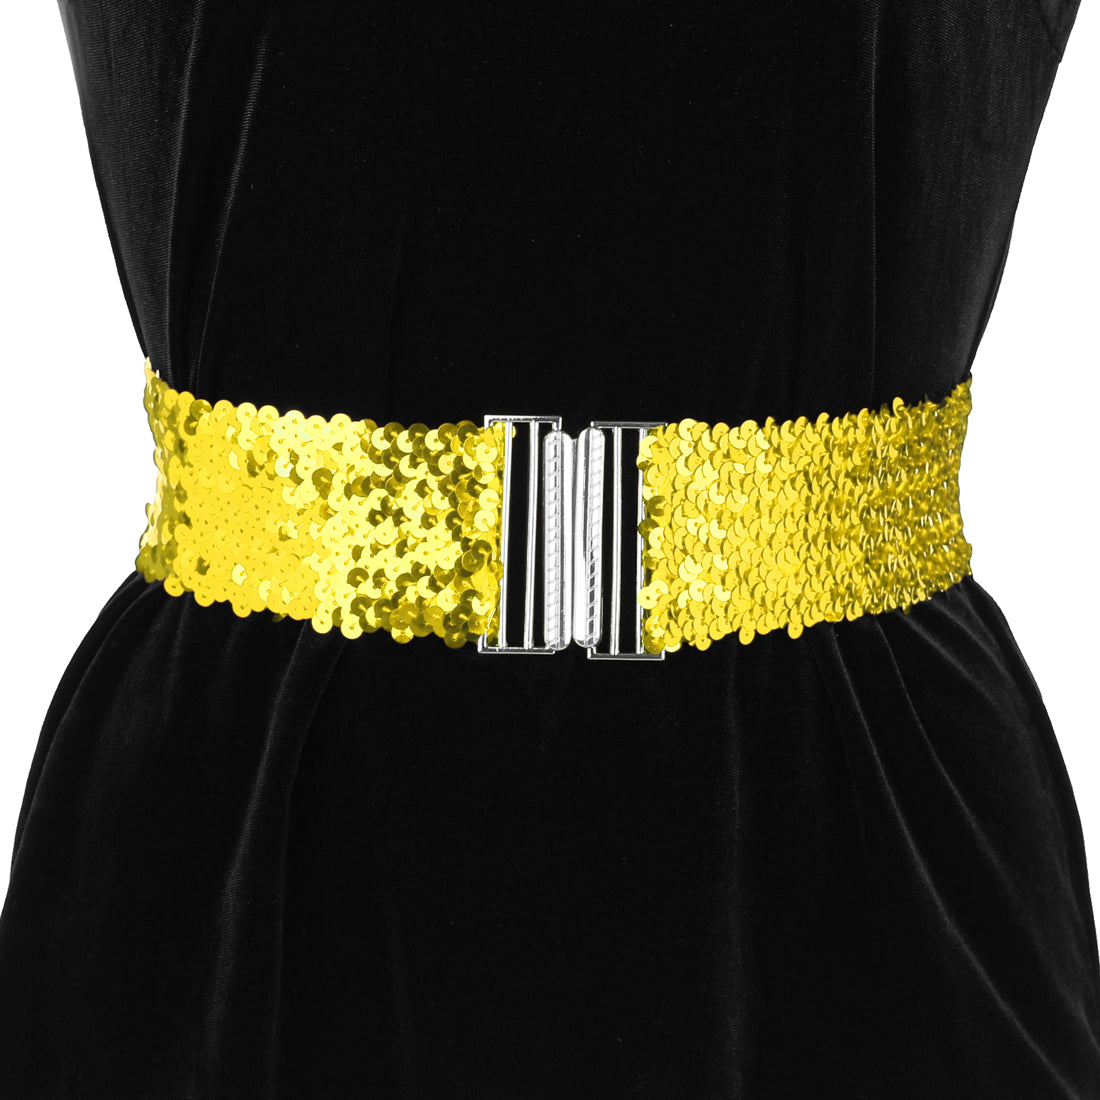 Allegra K Womens Glitter Stretchy Waist Belts Interlock Buckles Sequins Decor Wide Elastic Belts 2PCS